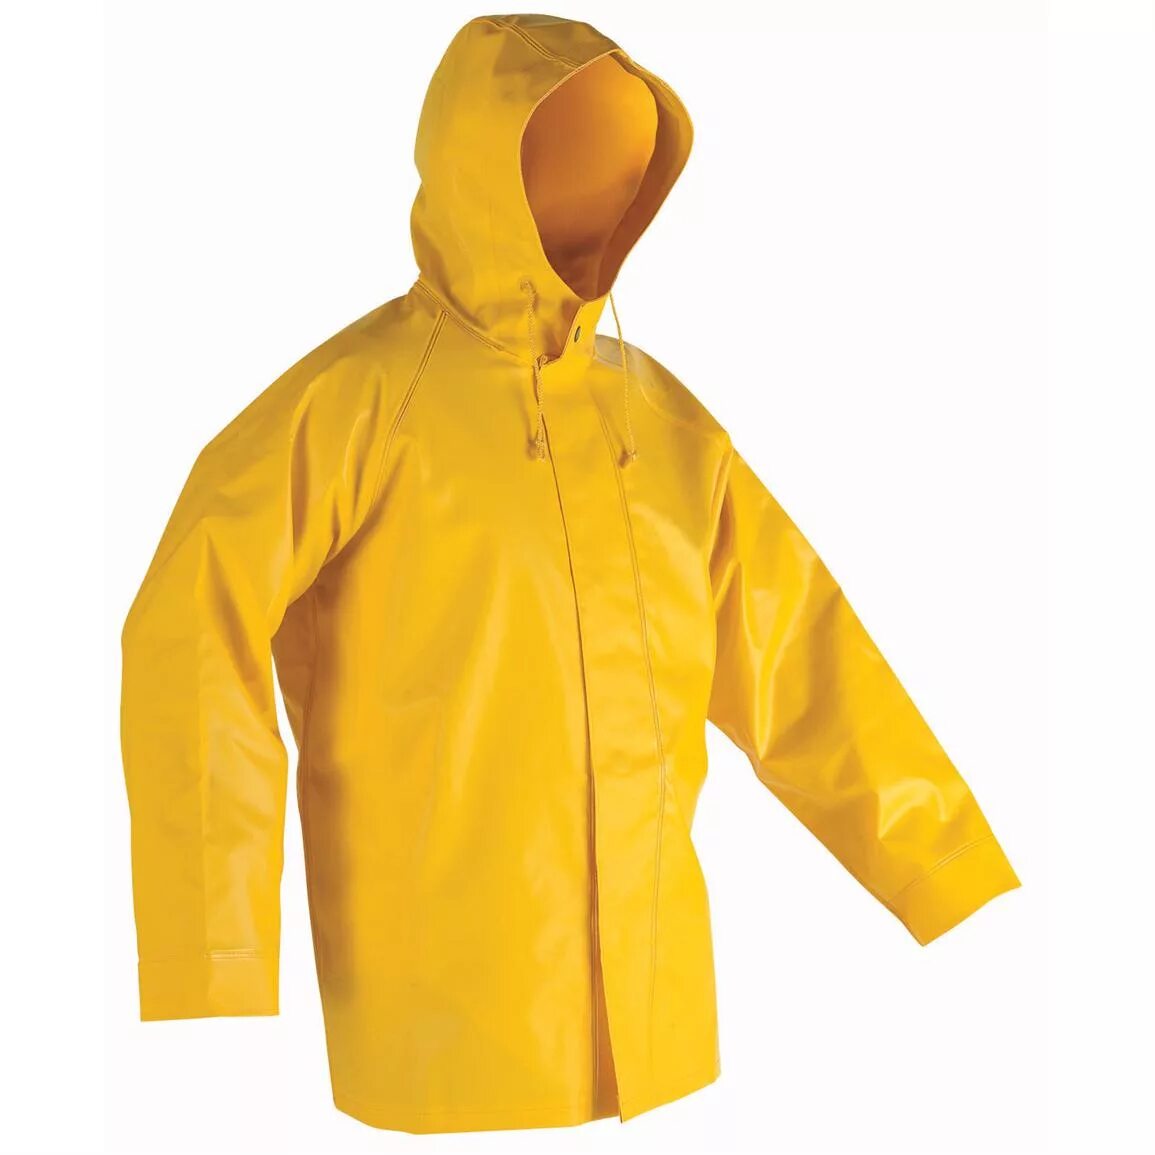 Дождевик на английском. Плащ ПВХ желтый (l) pvc1. Плащ резиновый желтый с капюшоном Tolsen 45097 размер l. Желтый дождевик мужской. Желтая куртка дождевик.